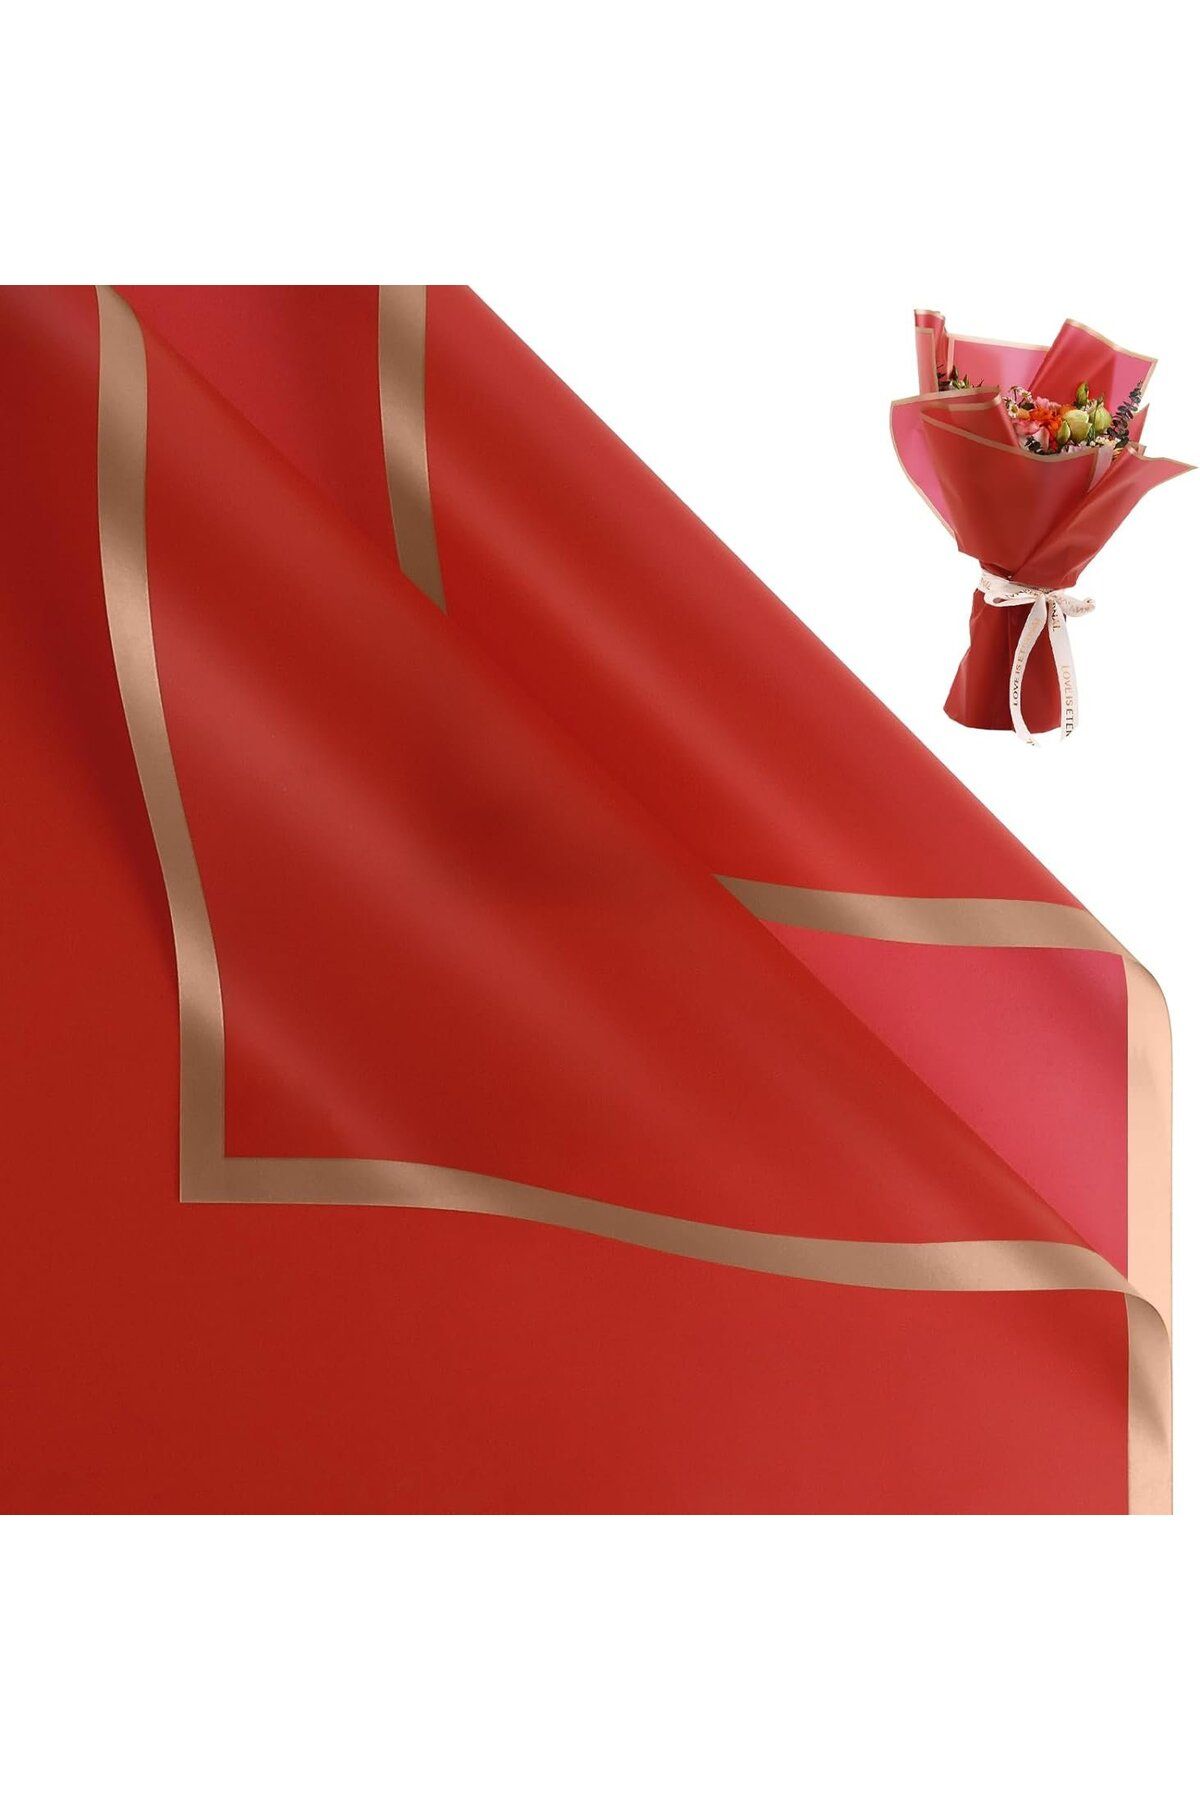 roco paper Çiçek Ambalaj Kağıdı - Kırmızı - Altın Kenarlı - Mat OPP 58x58 cm - 5 Adet